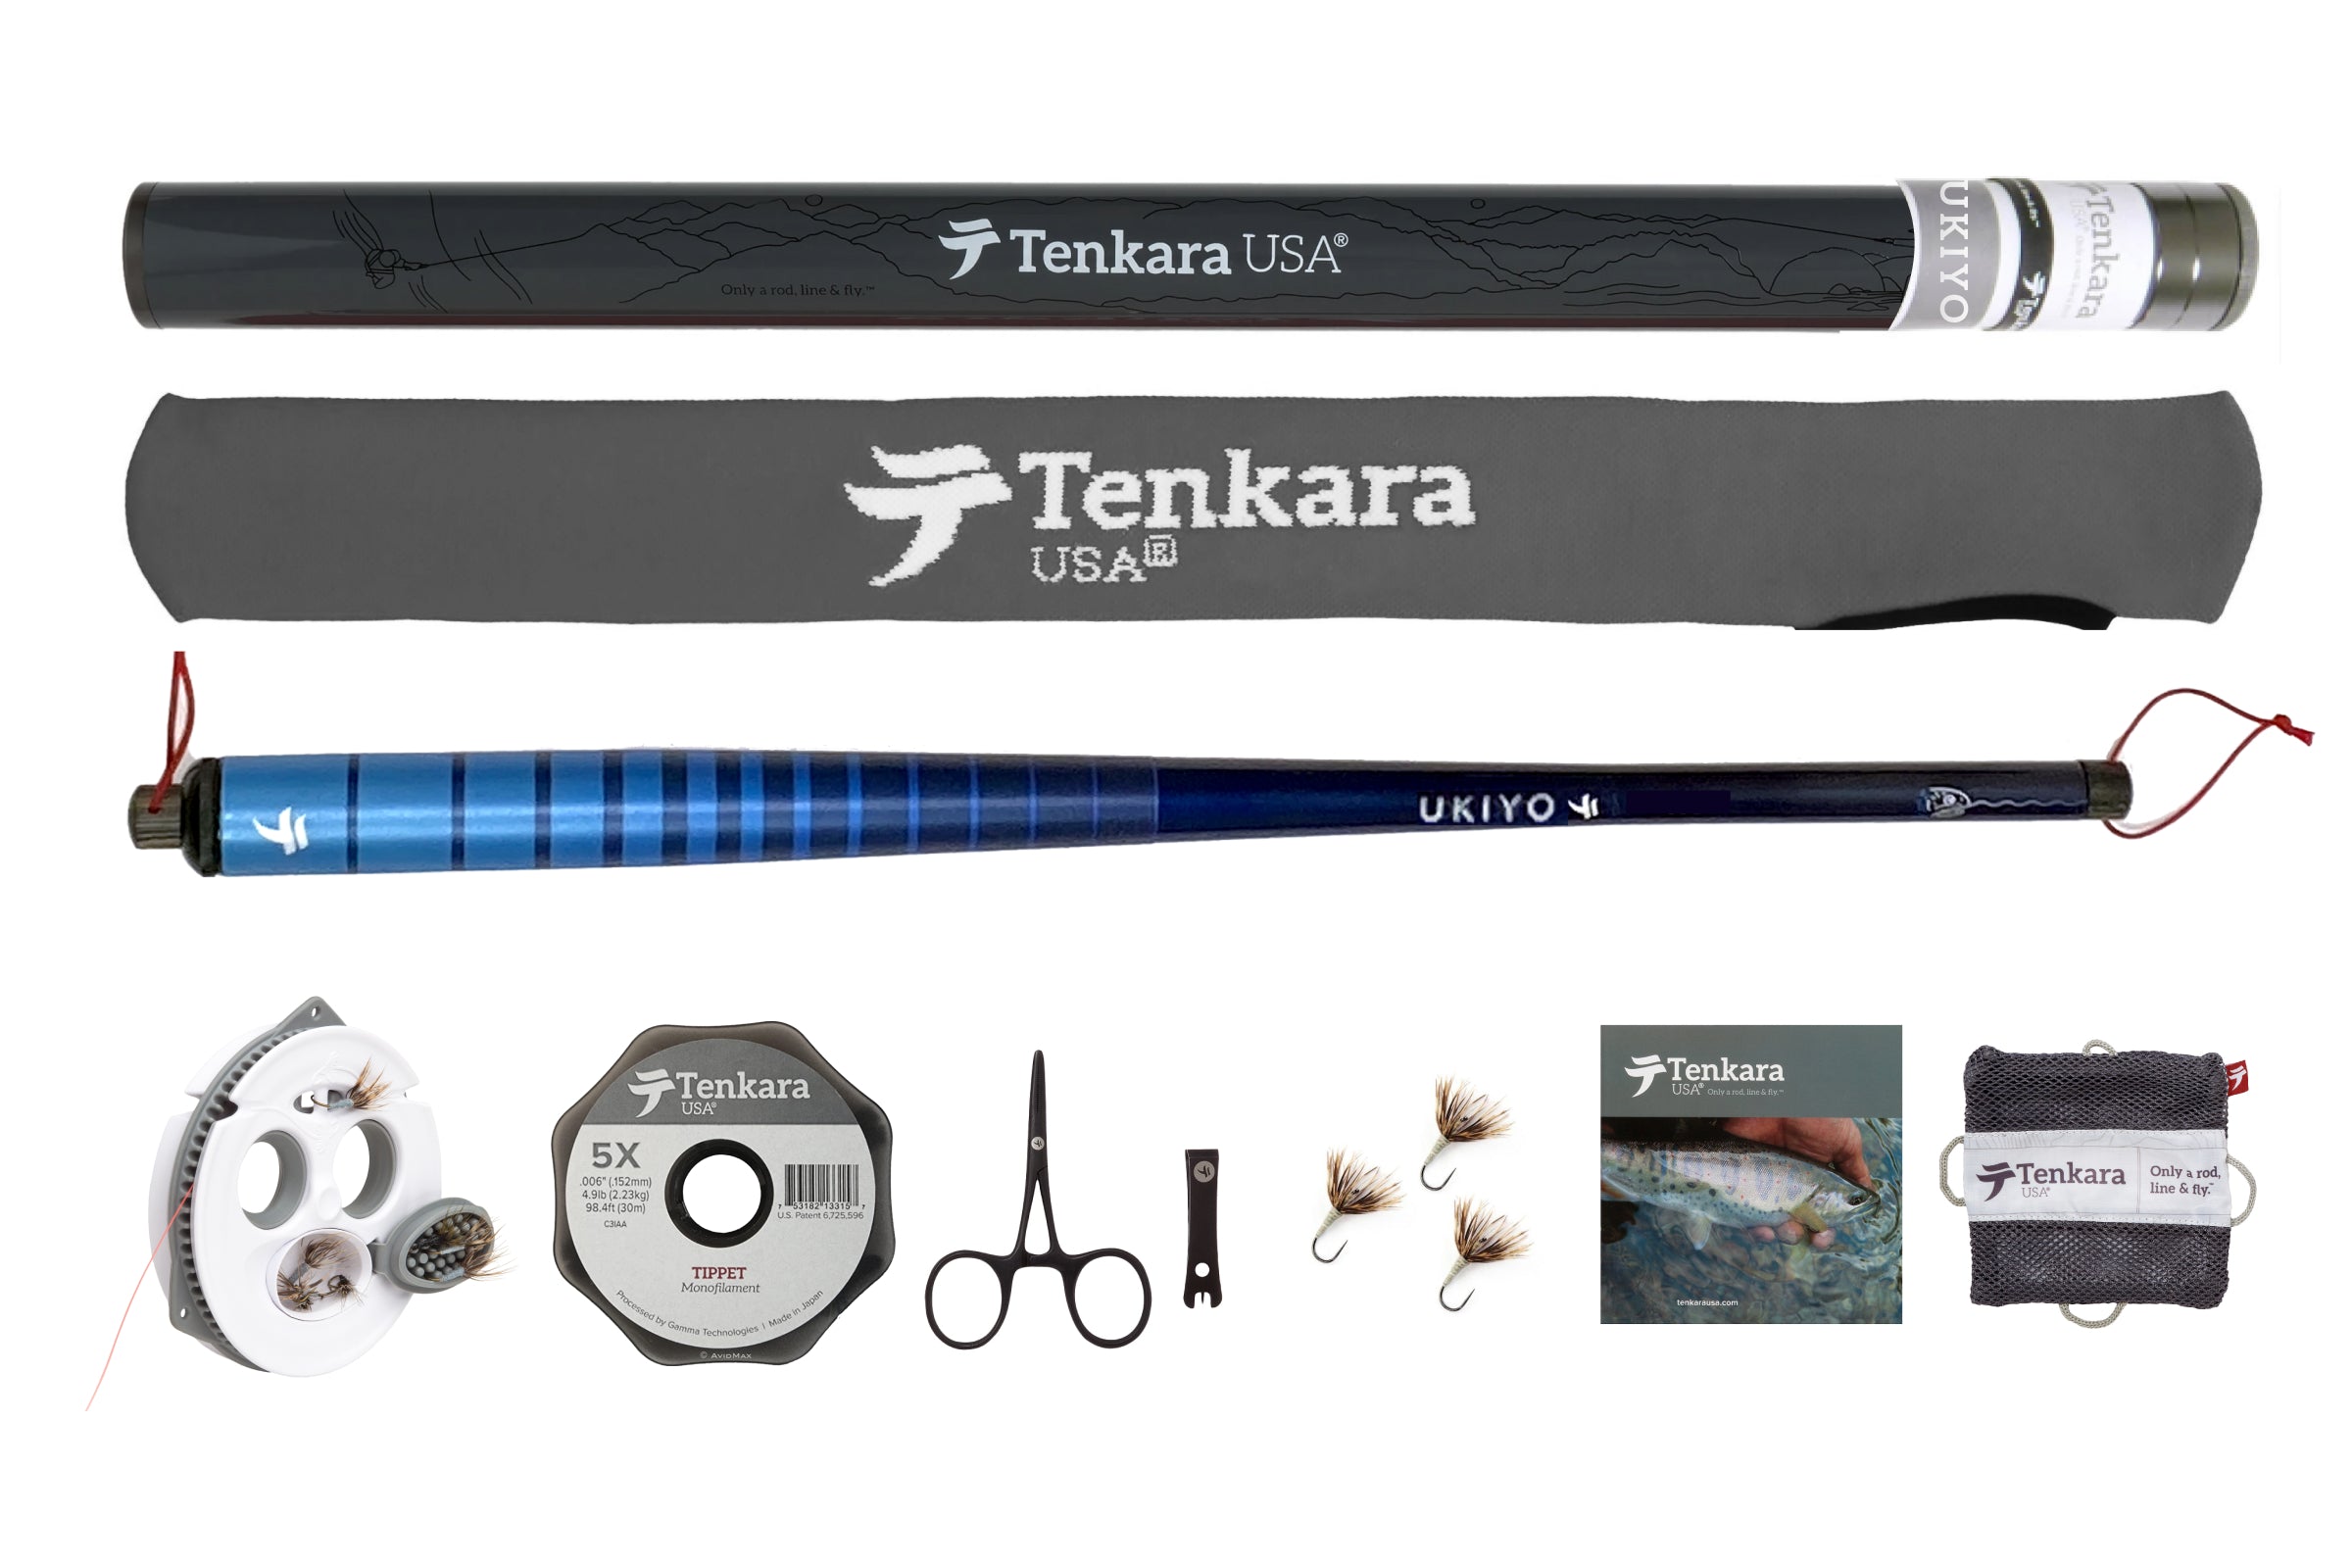 Fly Fishing Rod Combo 12/13 Ft Tenkara Rod Kit 30t Carbon Fiber